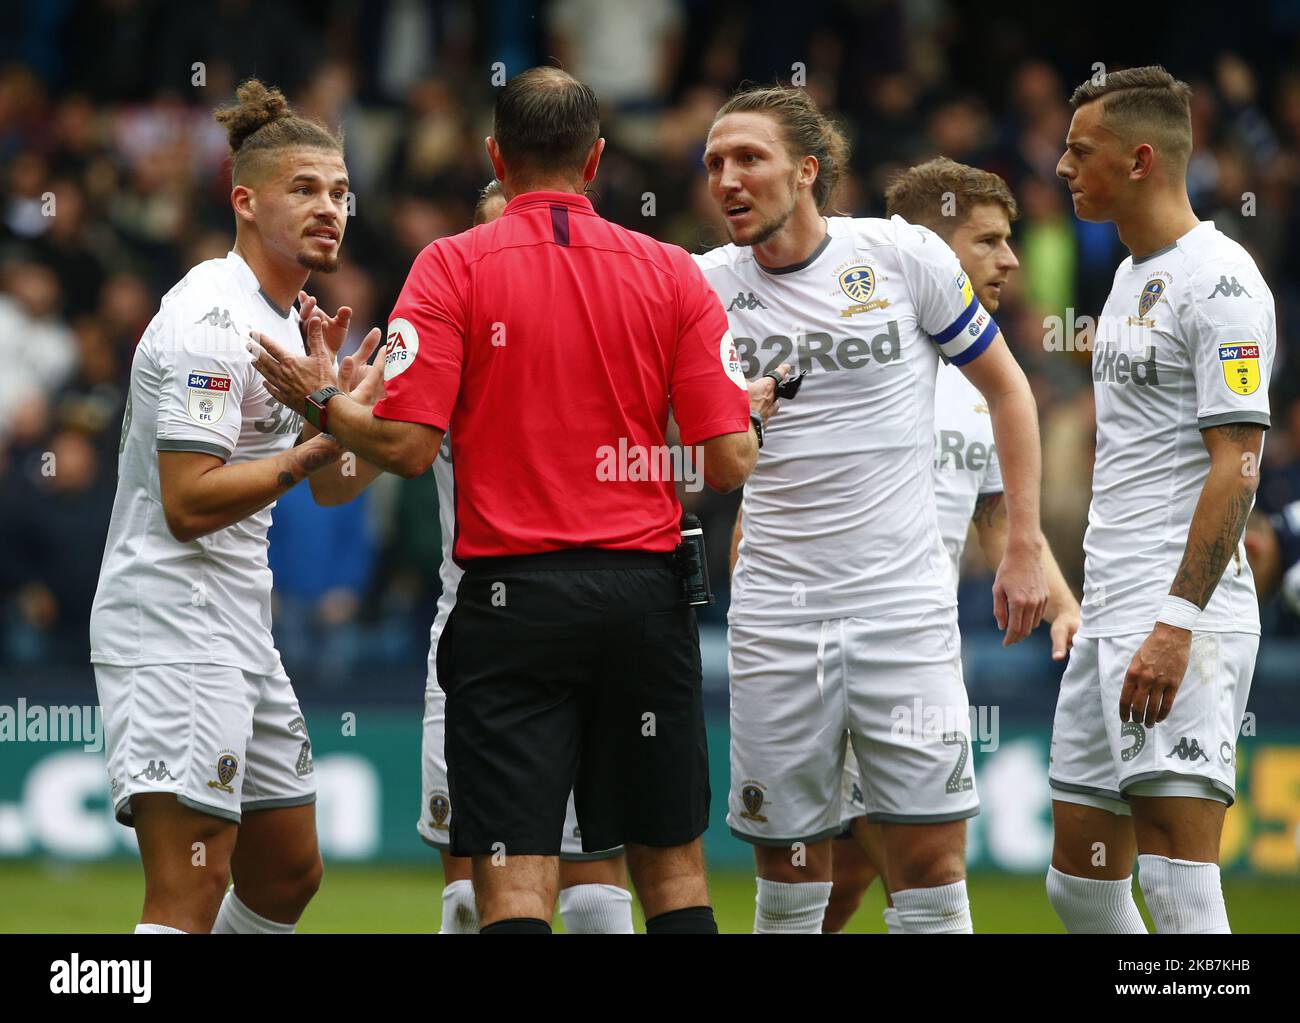 Millwall's Barrett on Blackburn Rovers defeat and refereeing